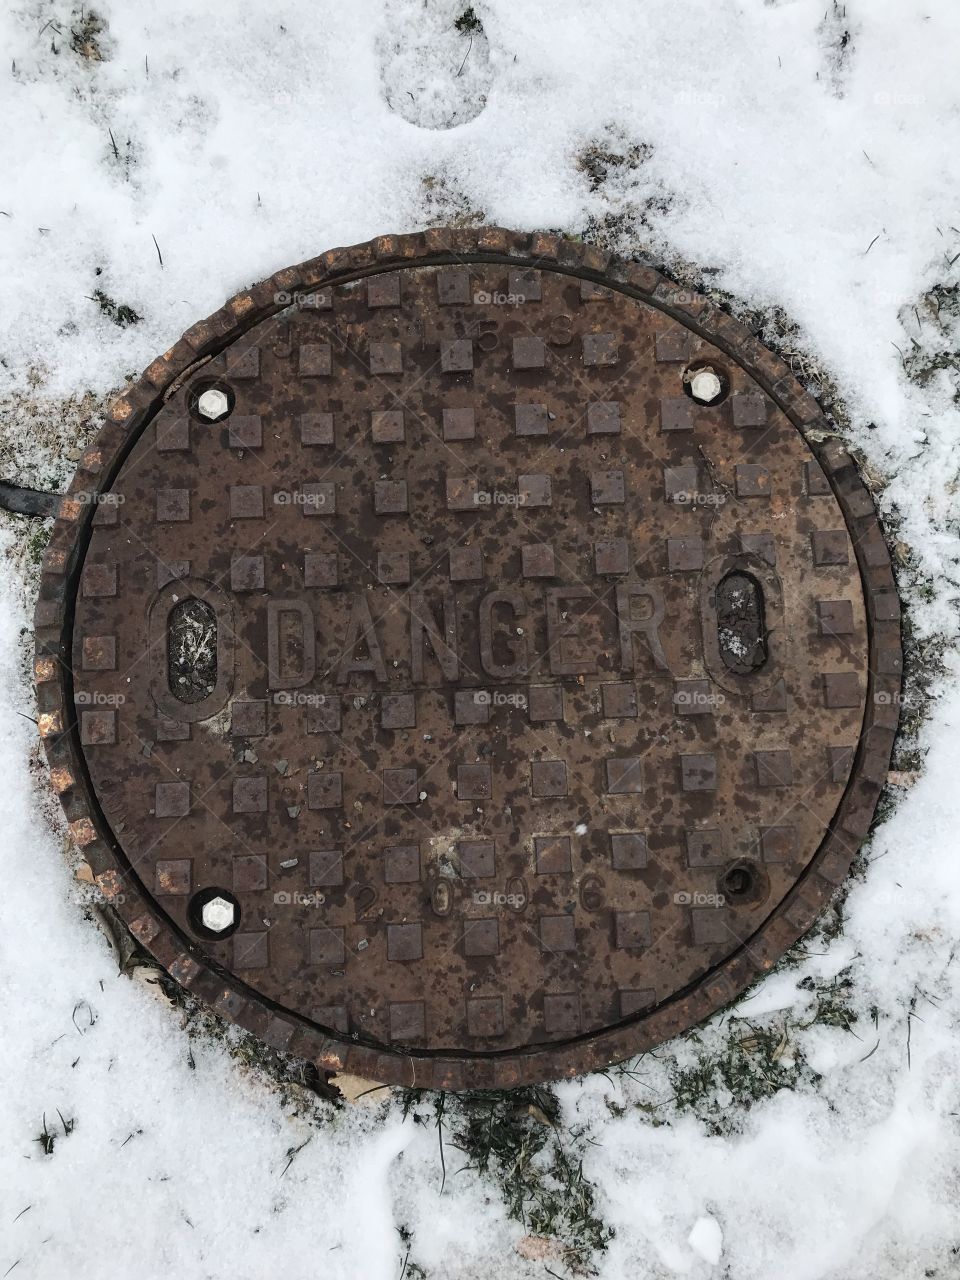 Ottawa sewage 